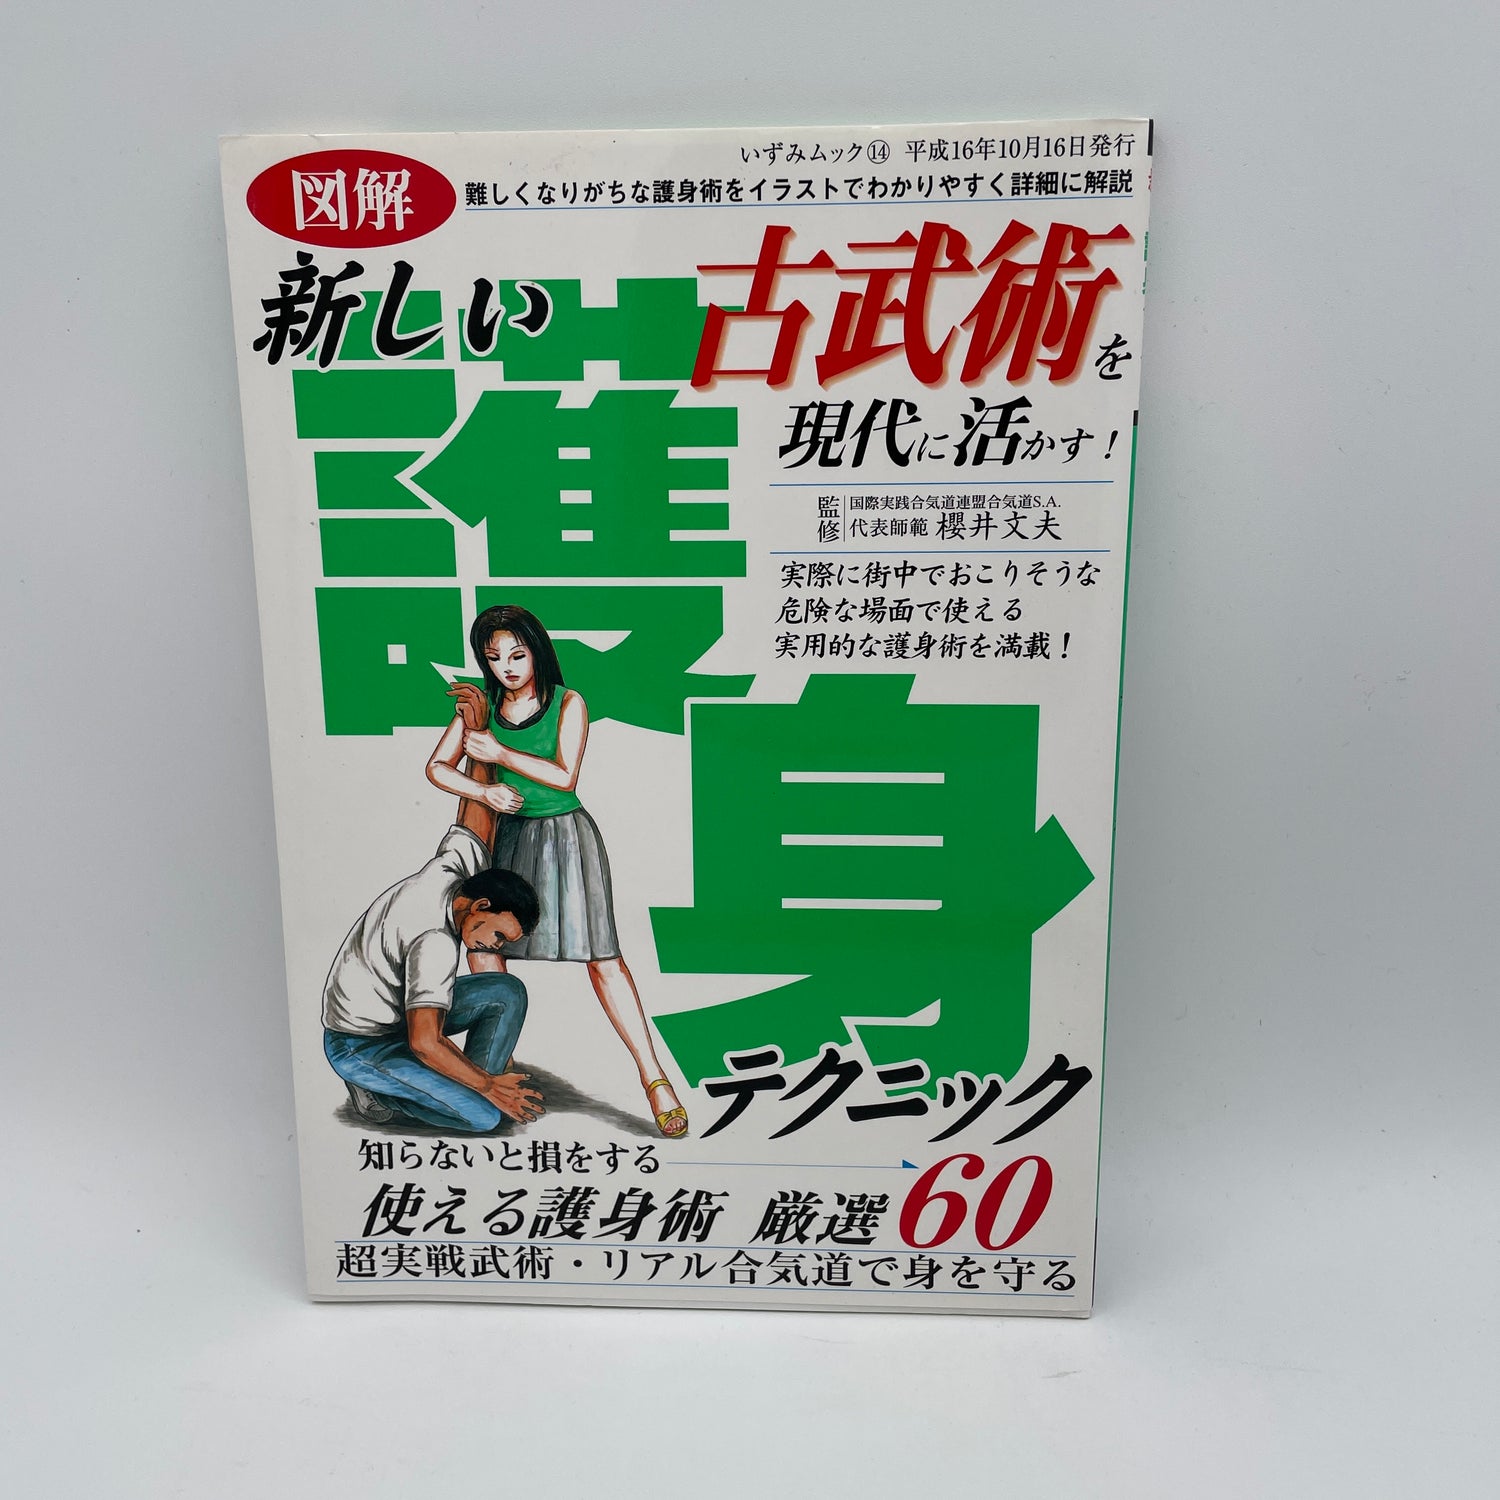 60 técnicas de autodefensa del libro Kobujutsu de Fumio Sakurai (usado)